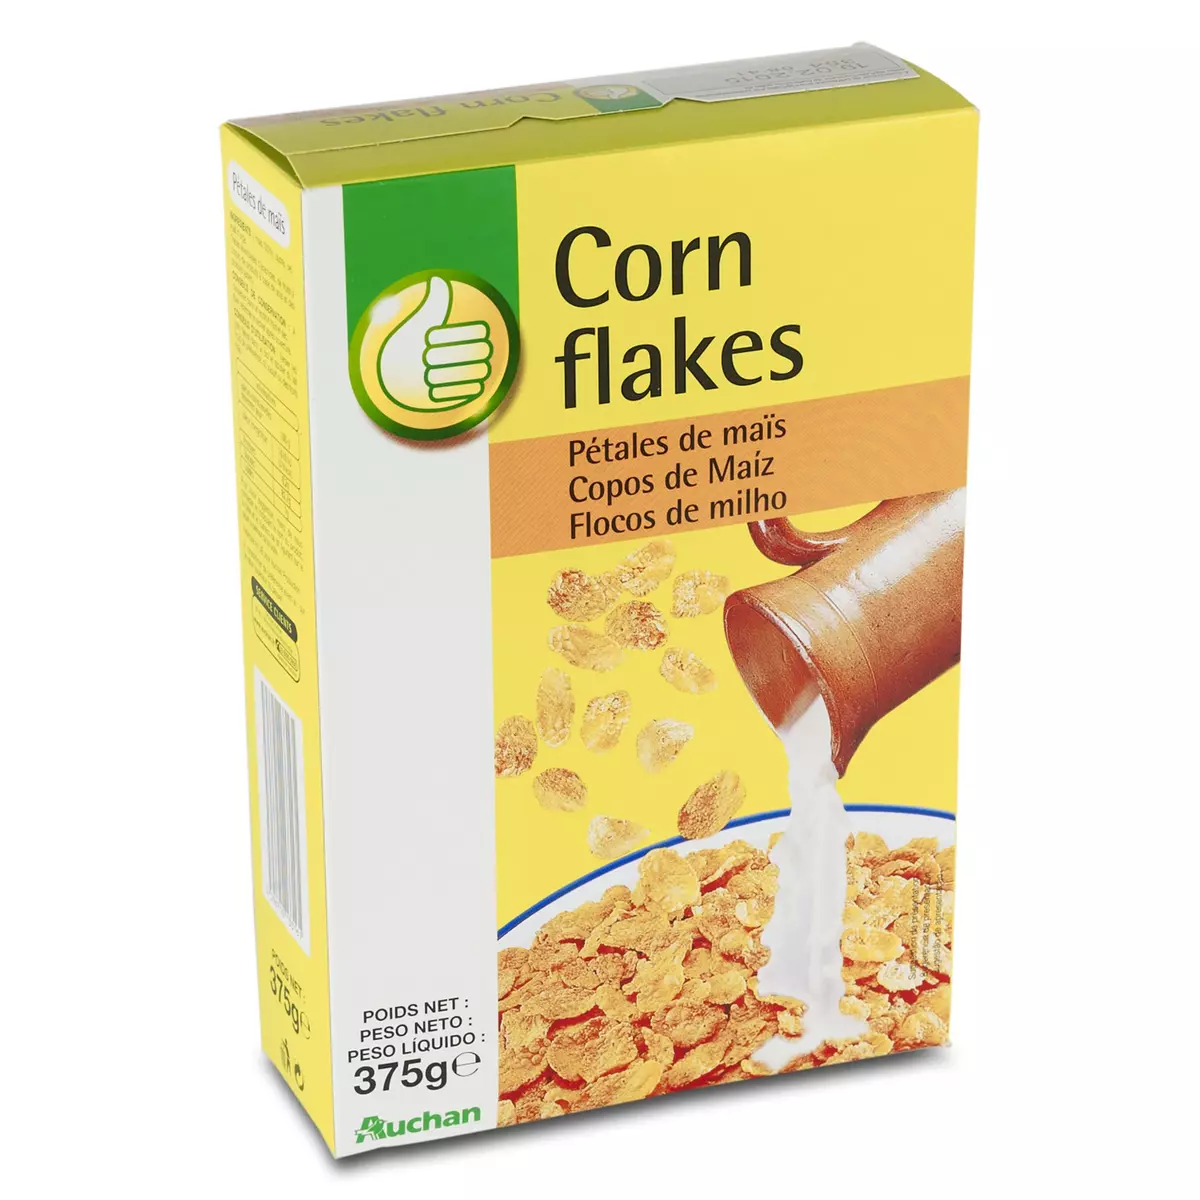 AUCHAN ESSENTIEL Corn flakes pétales de maïs 375g